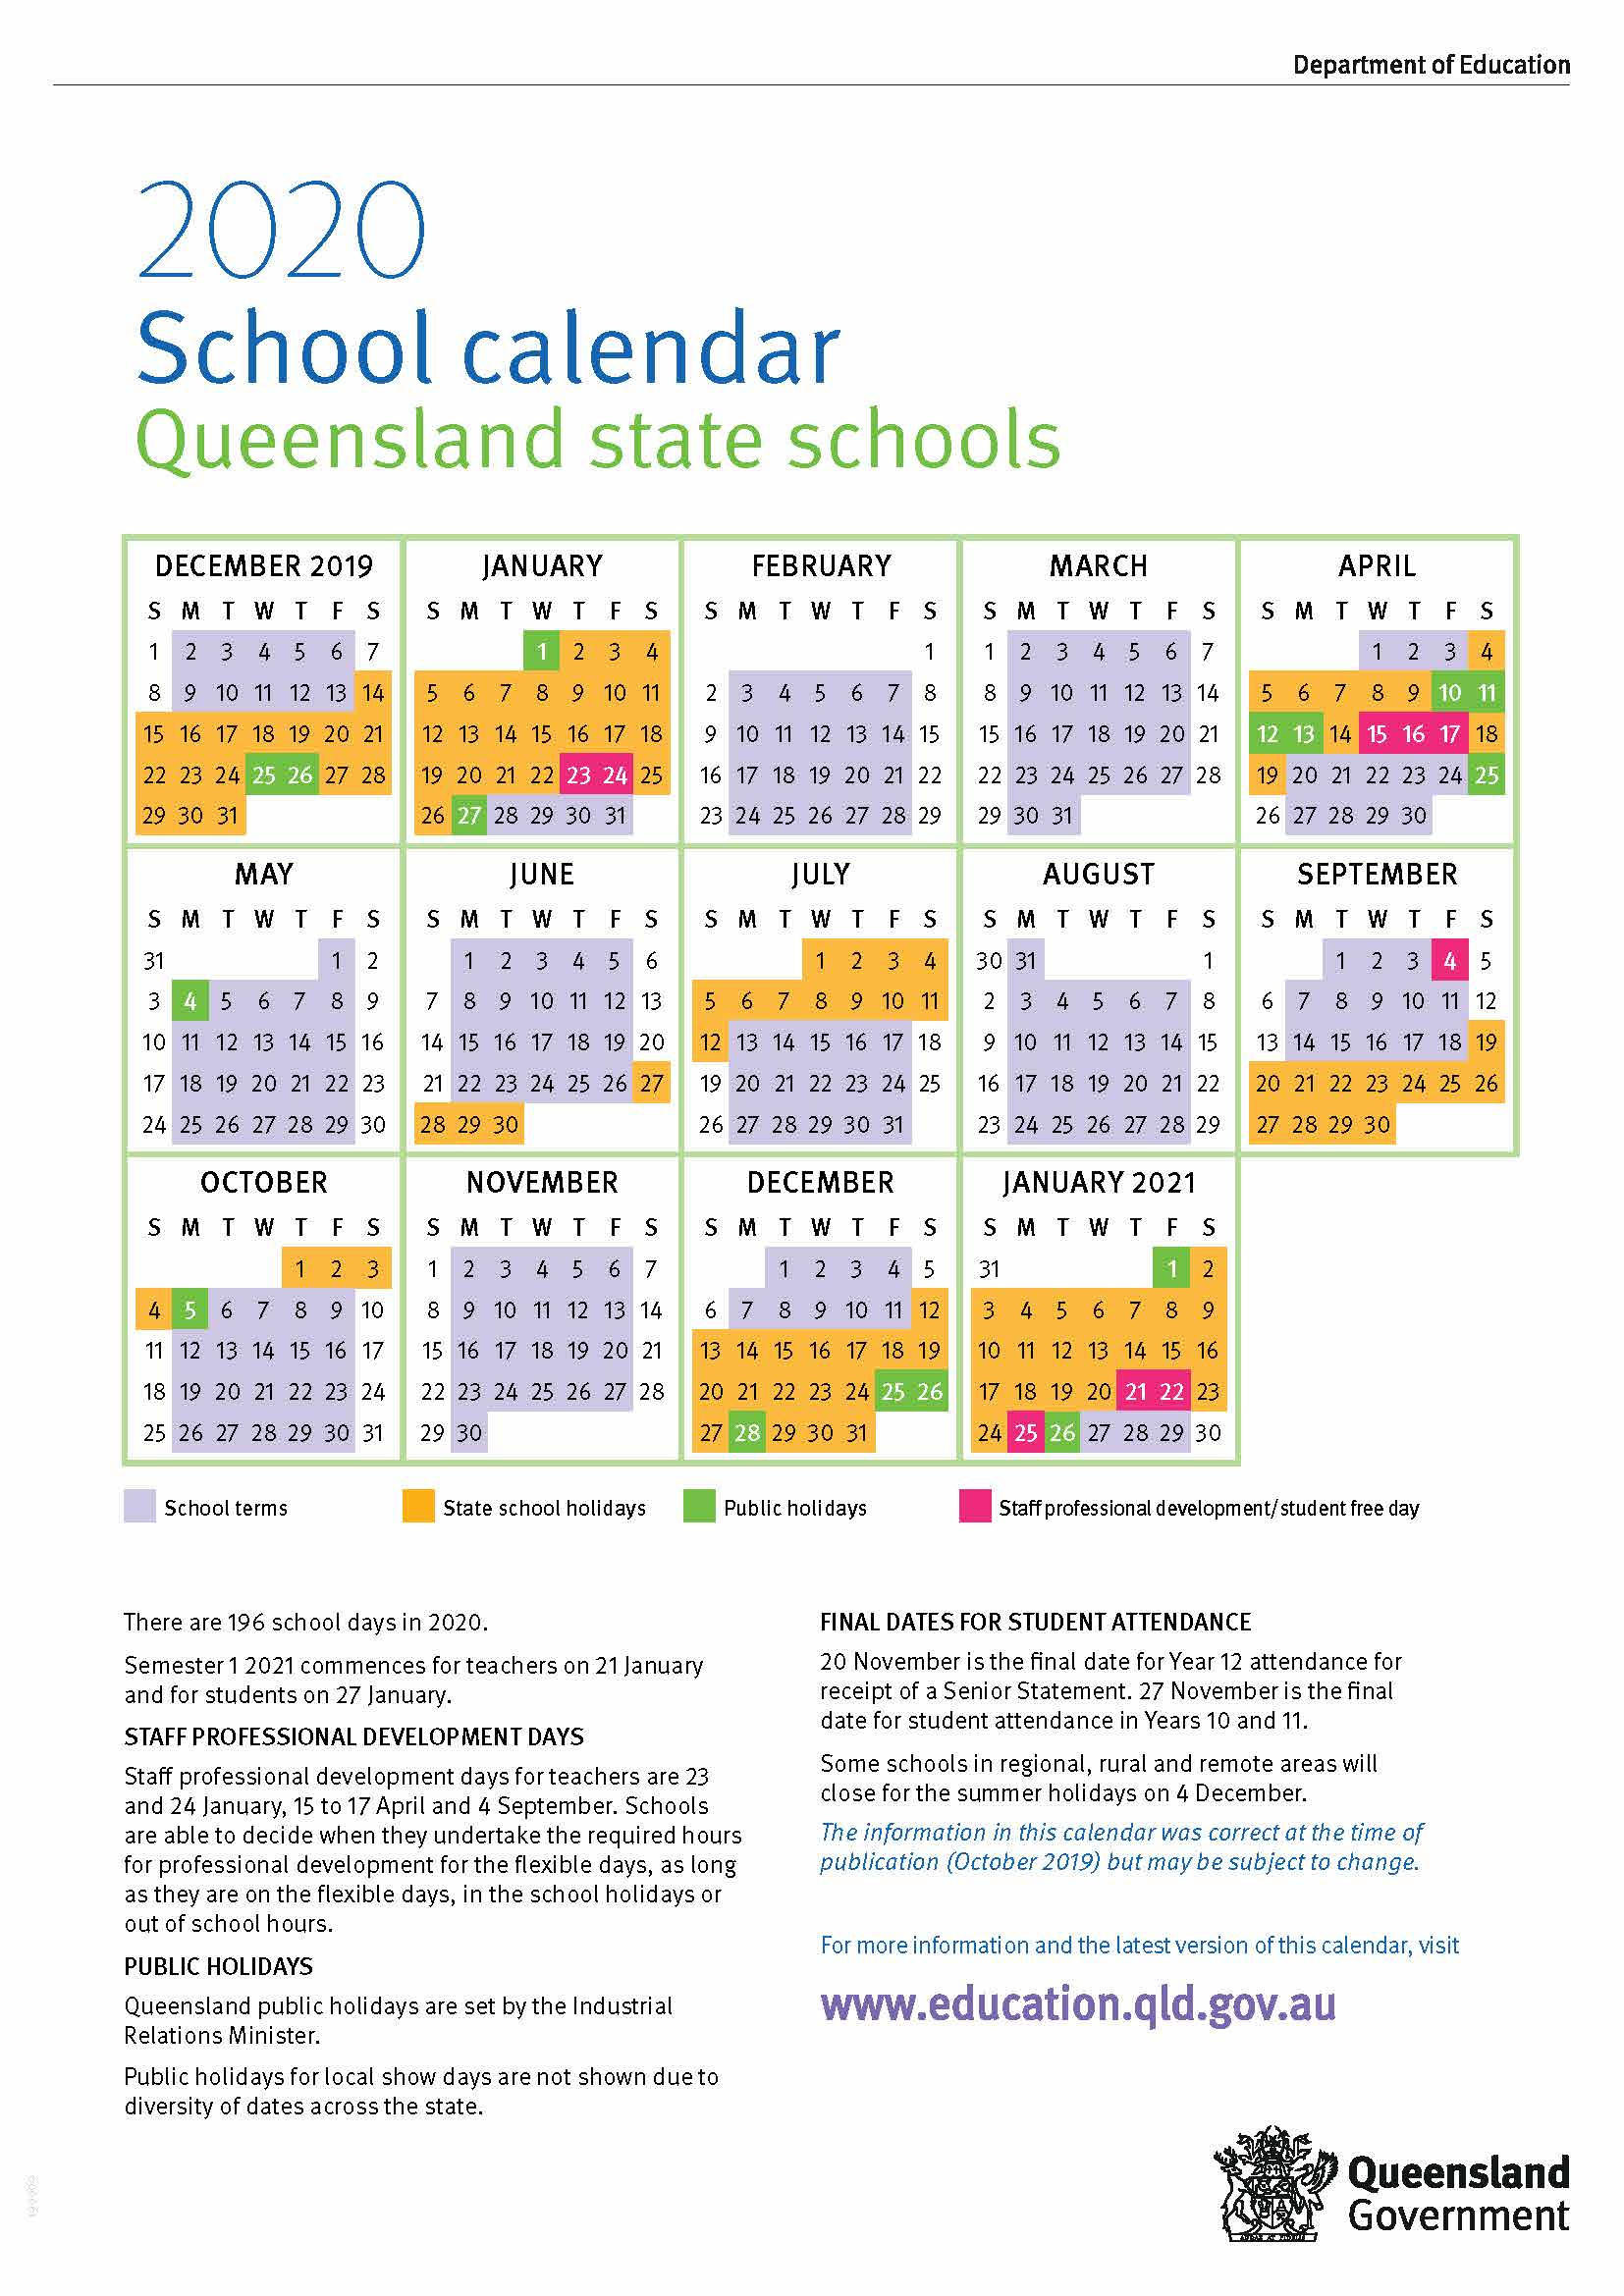 Pick 2020 School Calendar Queensland State Schools